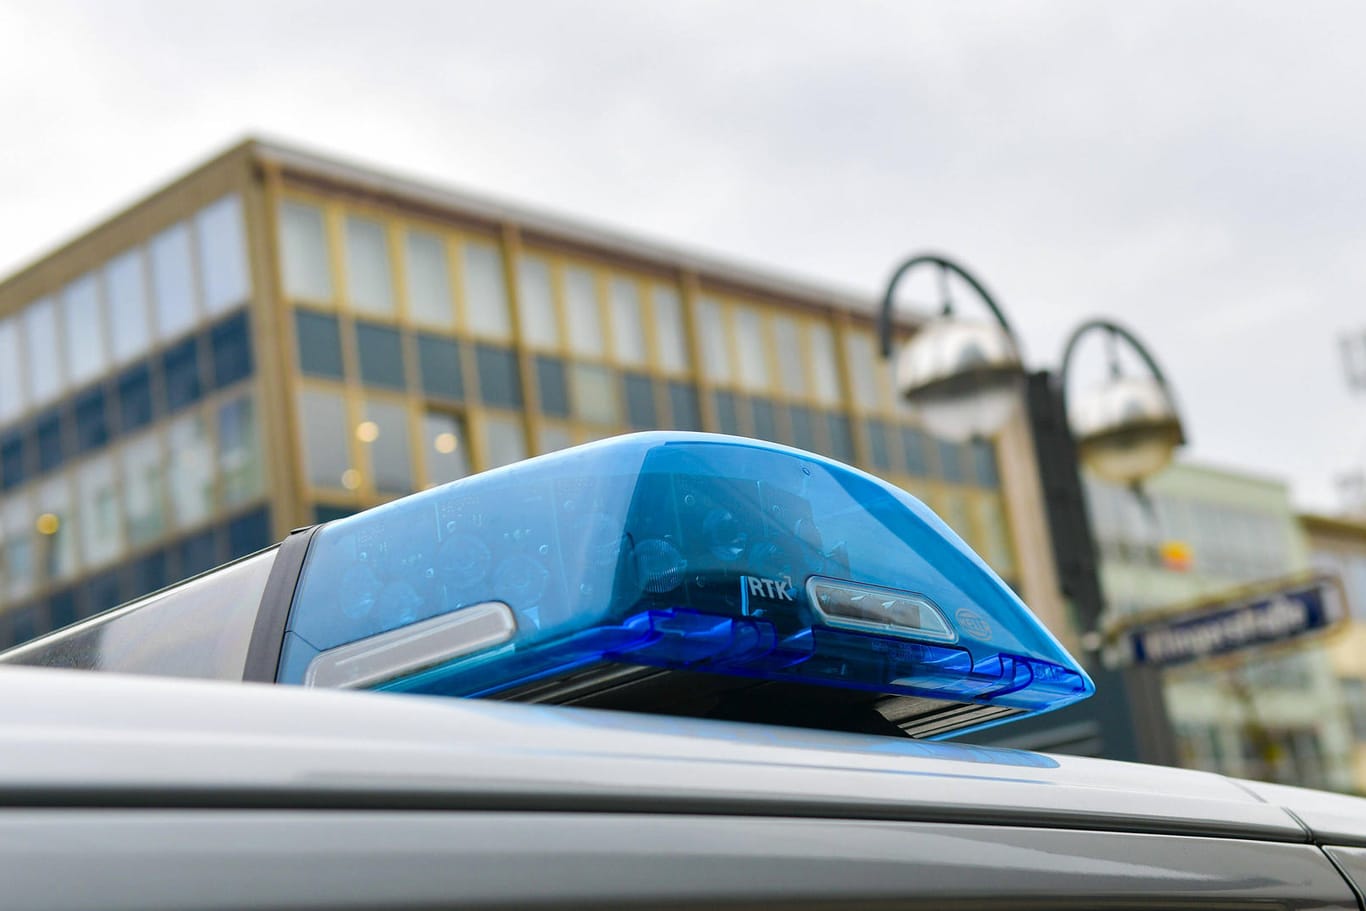 Blaulicht der Polizei: Ein 14-Jähriger fuhr unerlaubt mit dem Sportwagen seiner Eltern und verursachte dabei einen Sachschaden an einem anderen Auto.